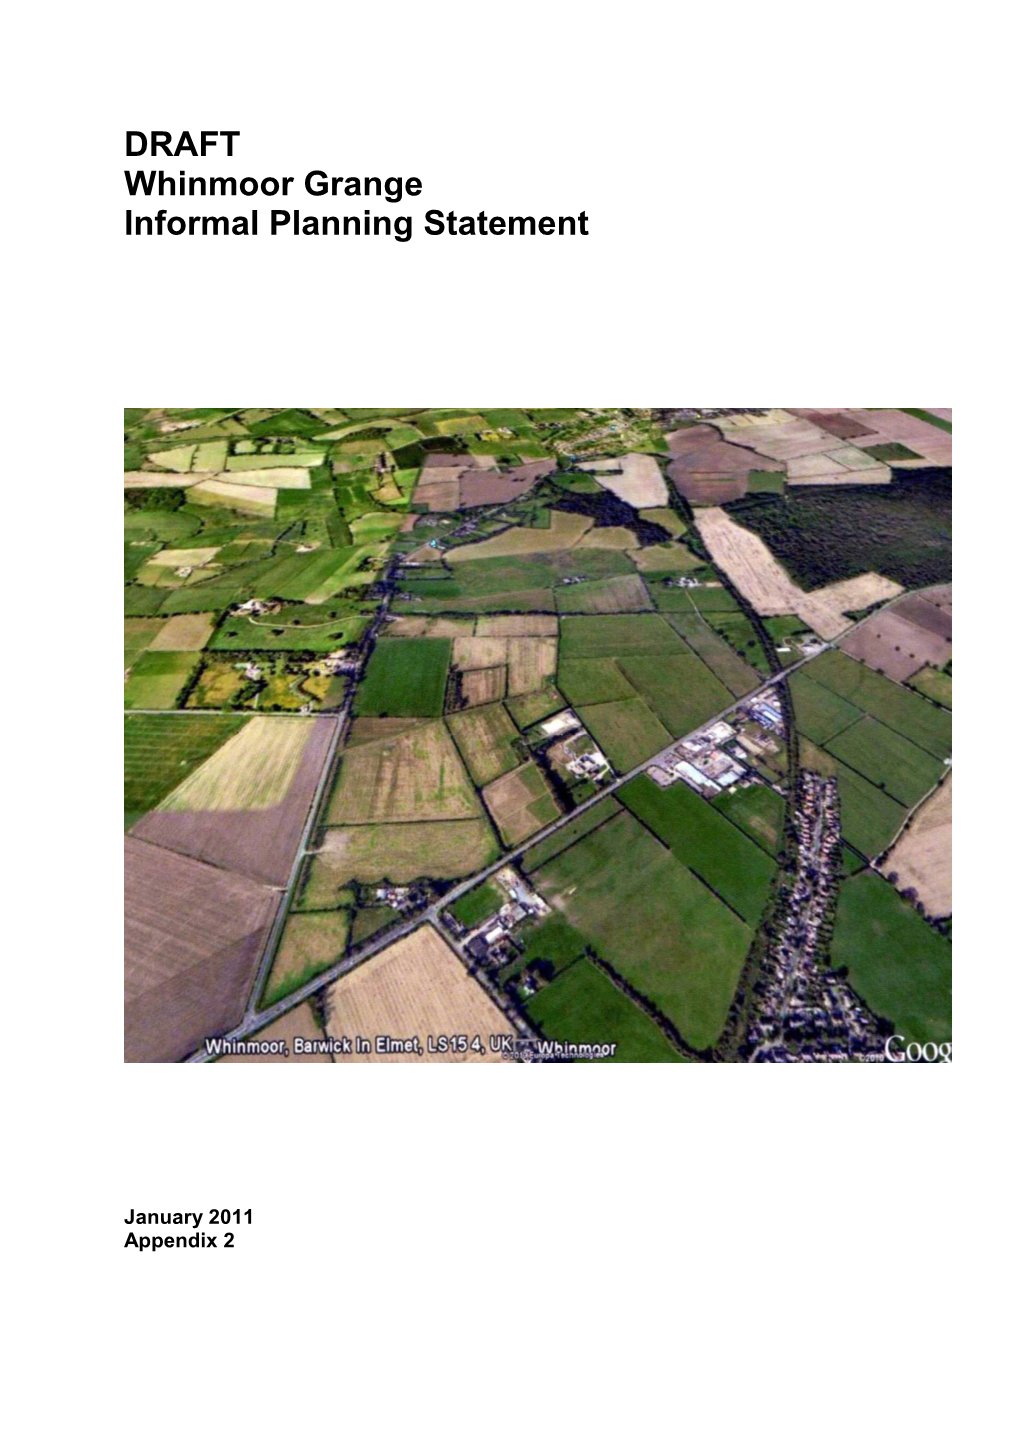 DRAFT Whinmoor Grange Informal Planning Statement